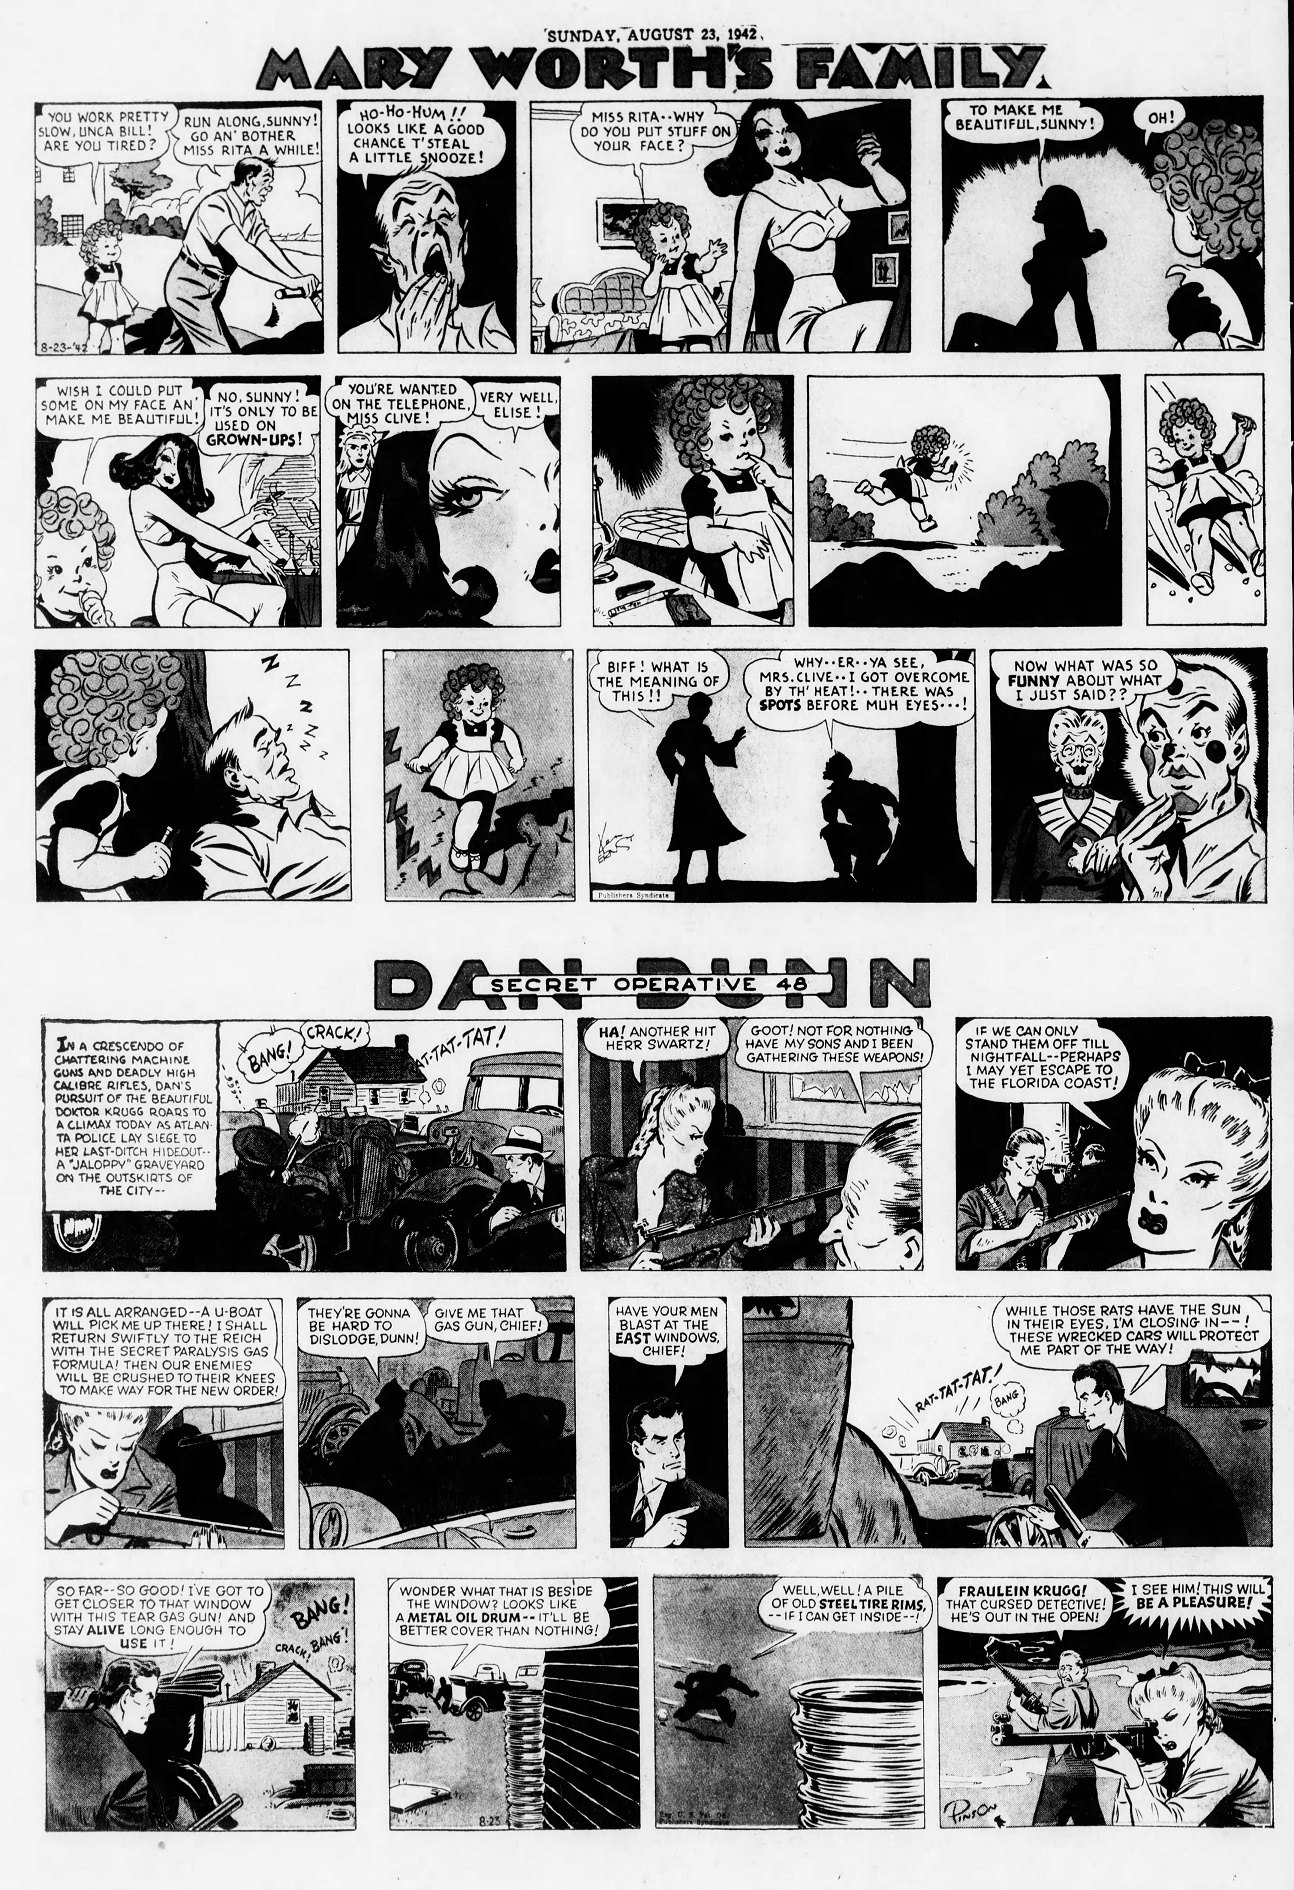 The_Brooklyn_Daily_Eagle_Sun__Aug_23__1942_(8).jpg